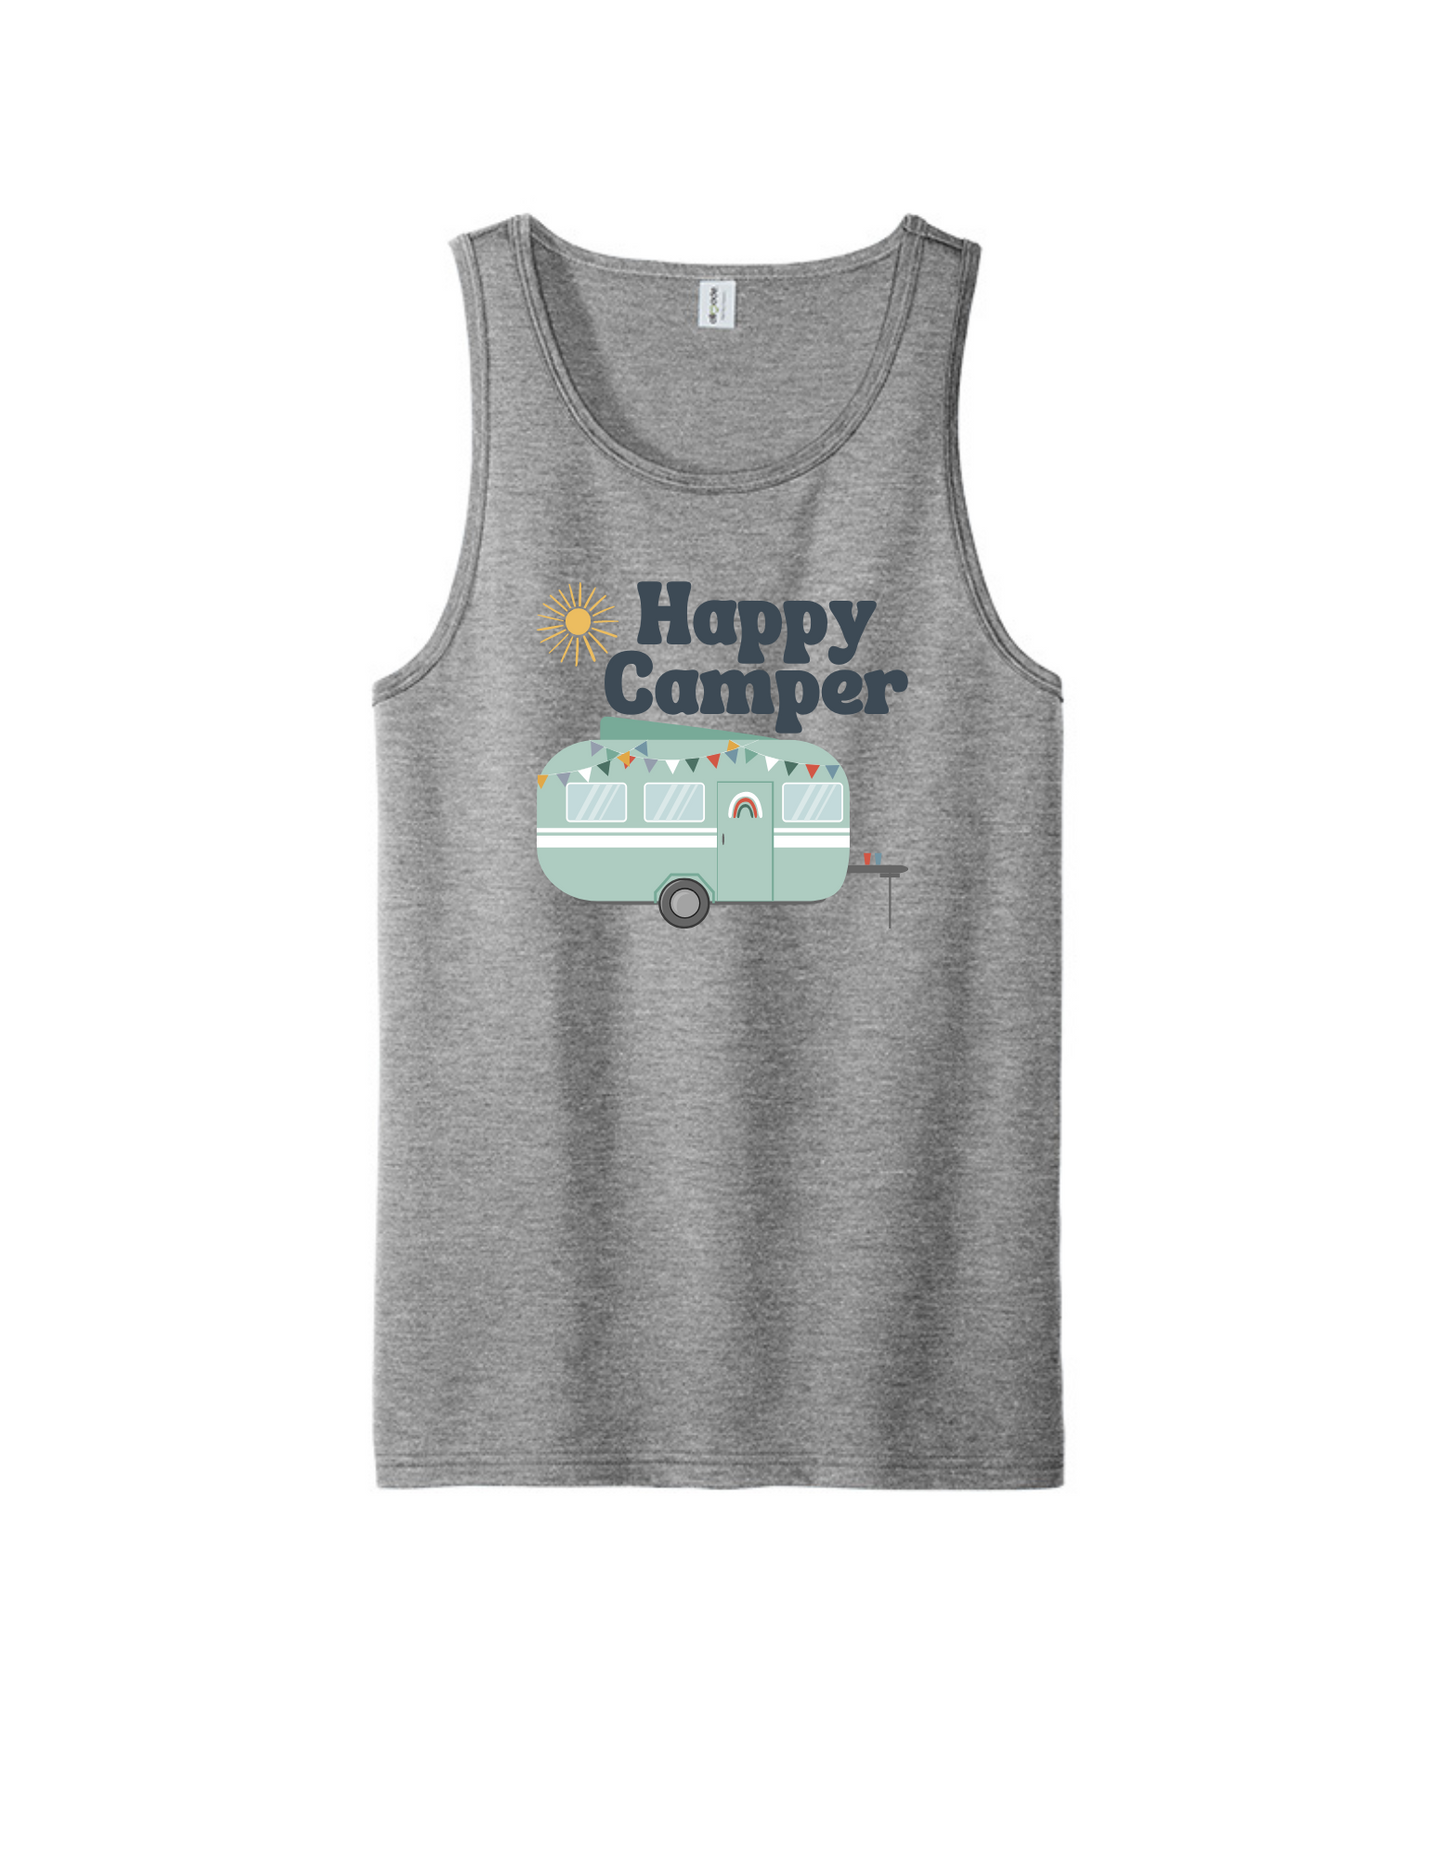 Happy Camper Gray Tank Top